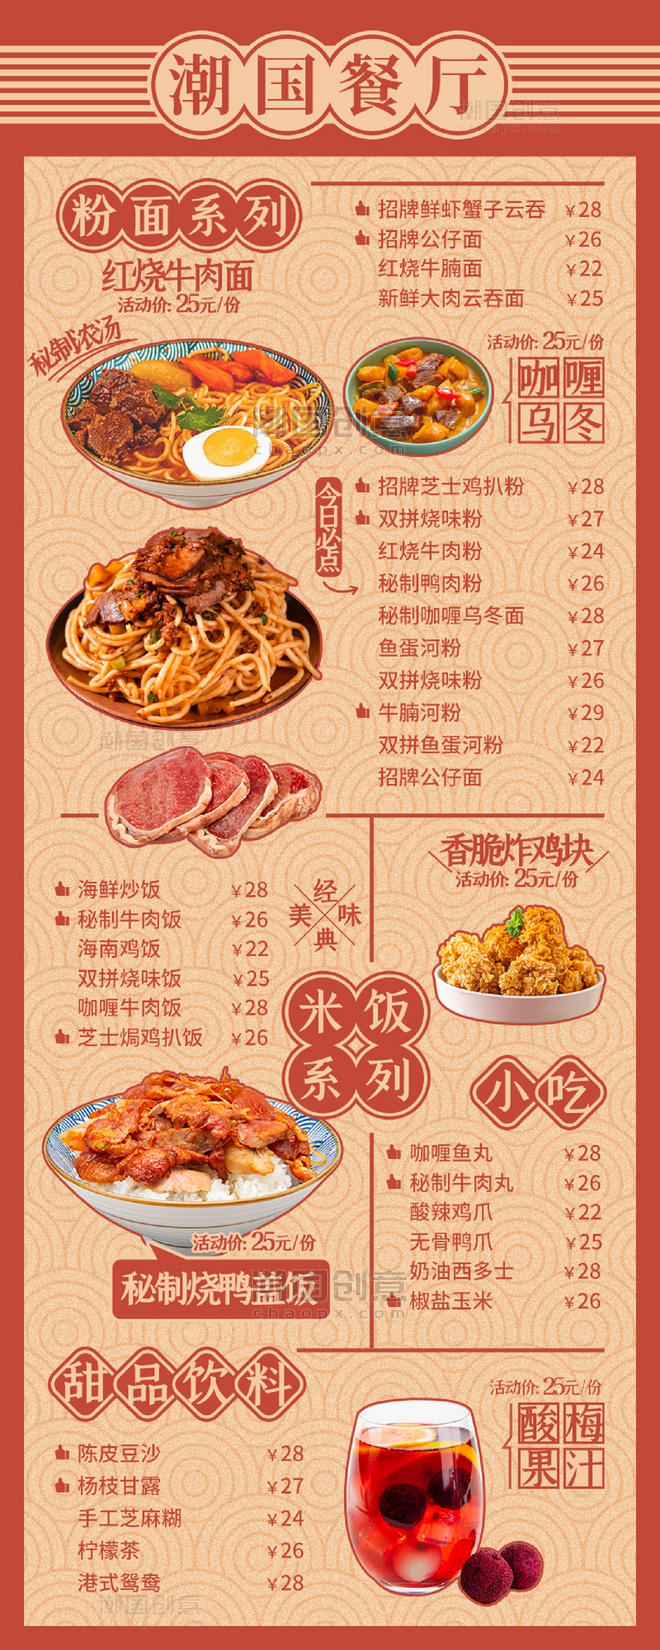 中式餐厅菜单餐饮美食红橙色复古长图海报